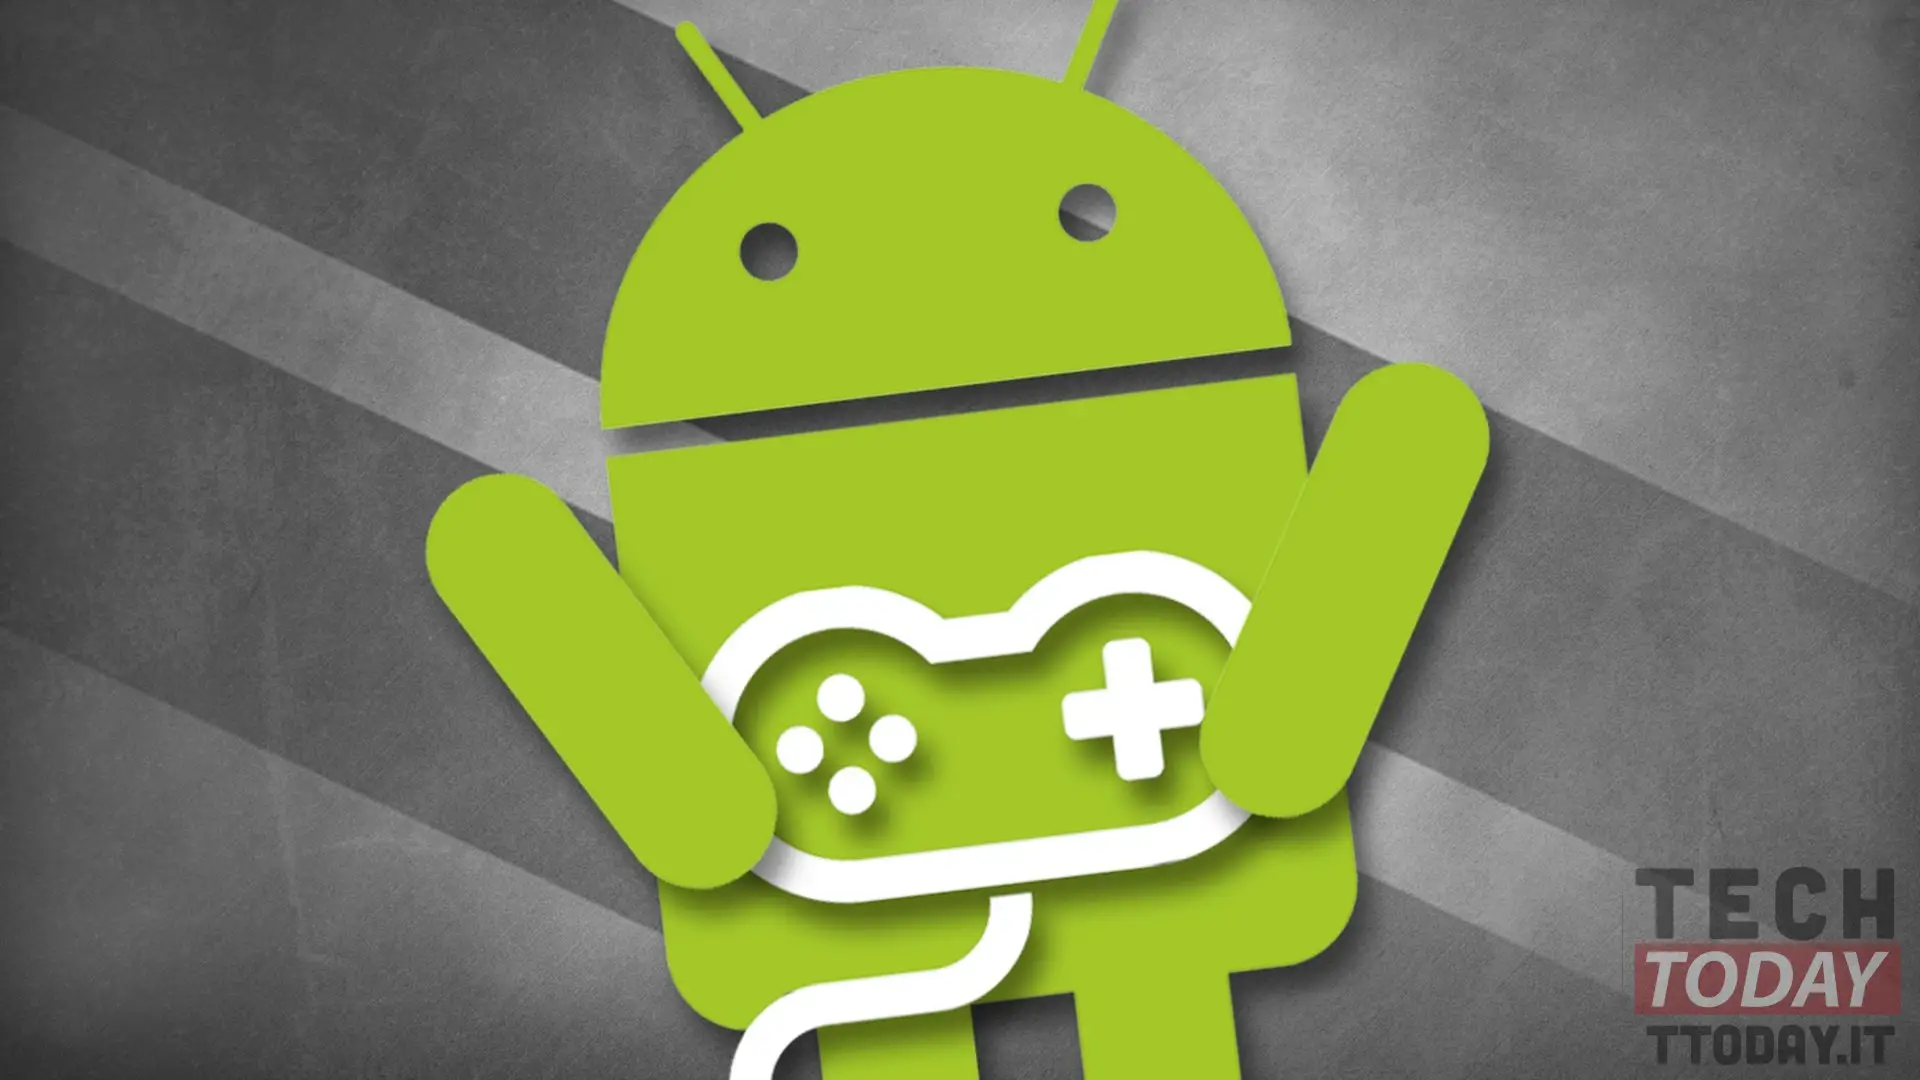 So verbessern Sie die Spieleleistung unter Android mit msaa 4x